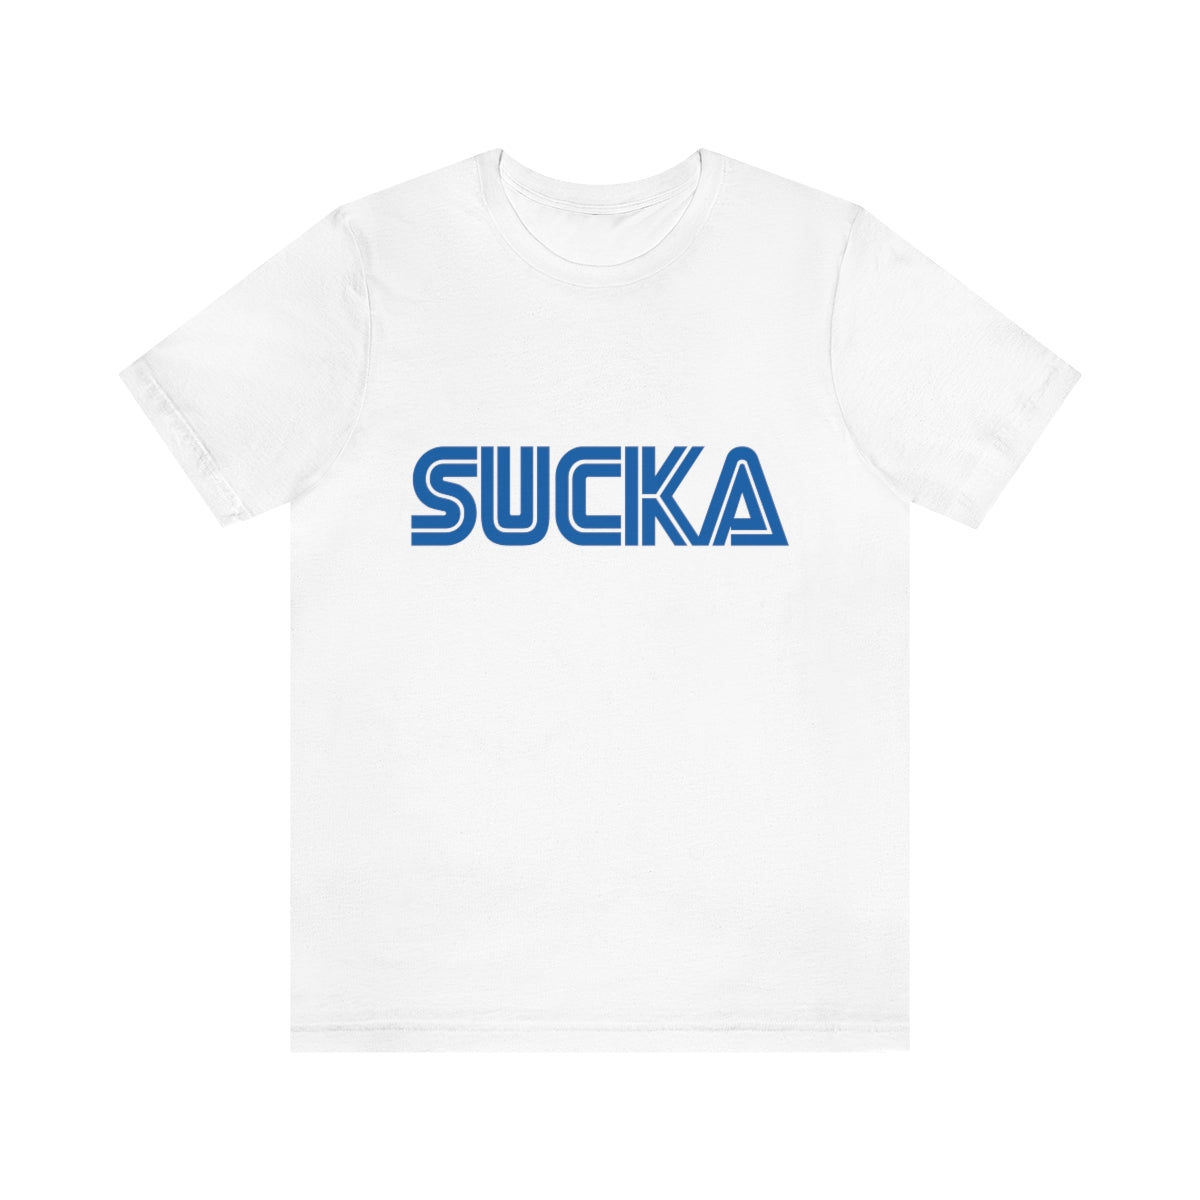 Sucka T-Shirt